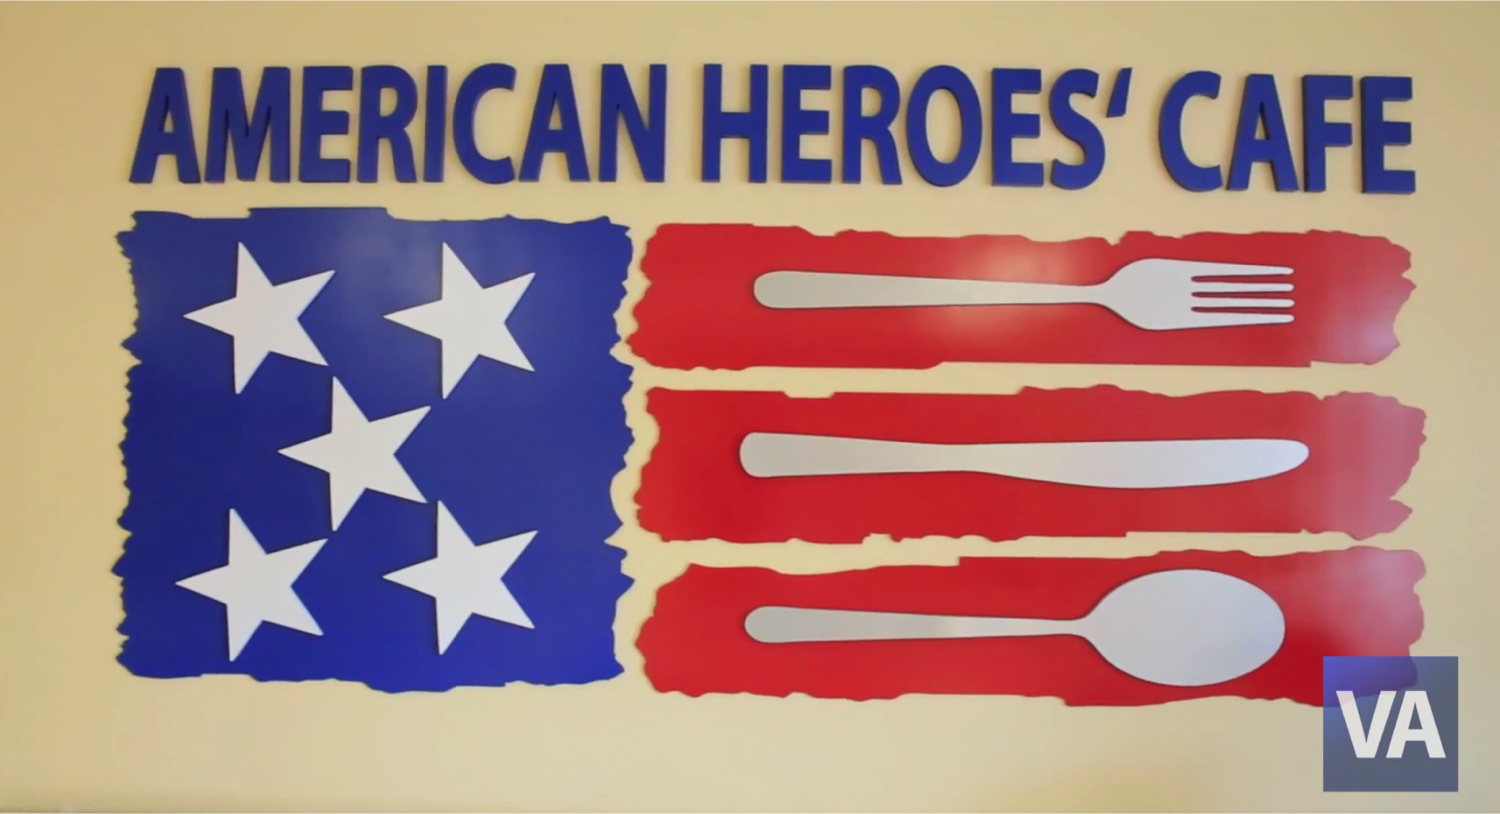 American Heroes Cafe